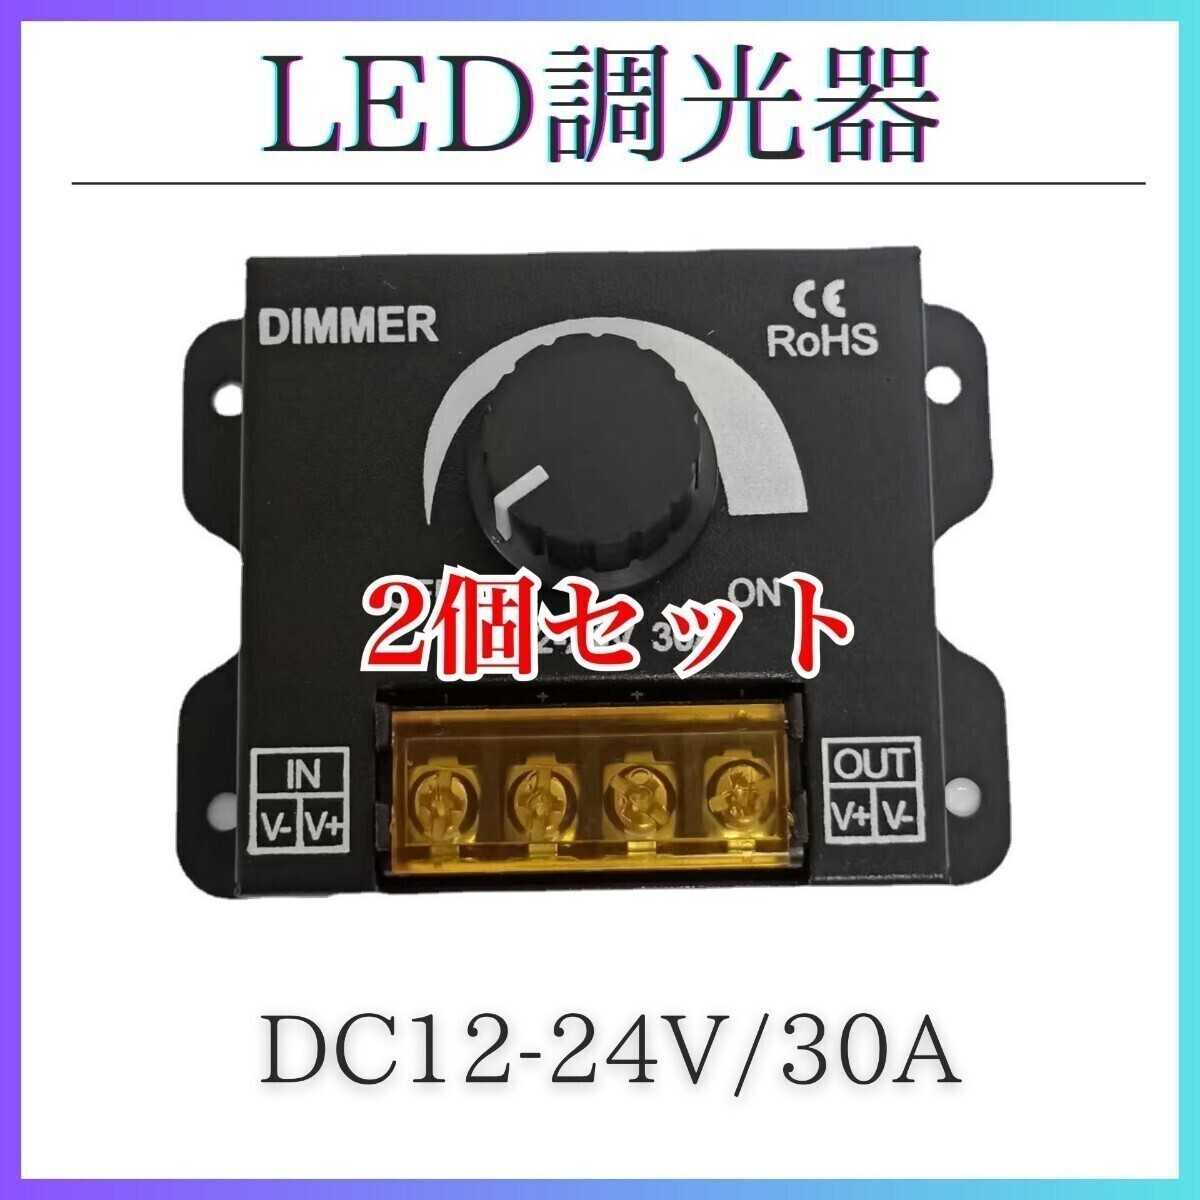 2個 LED調光器 ディマースイッチ コントローラー 12V 24V 30A_画像1